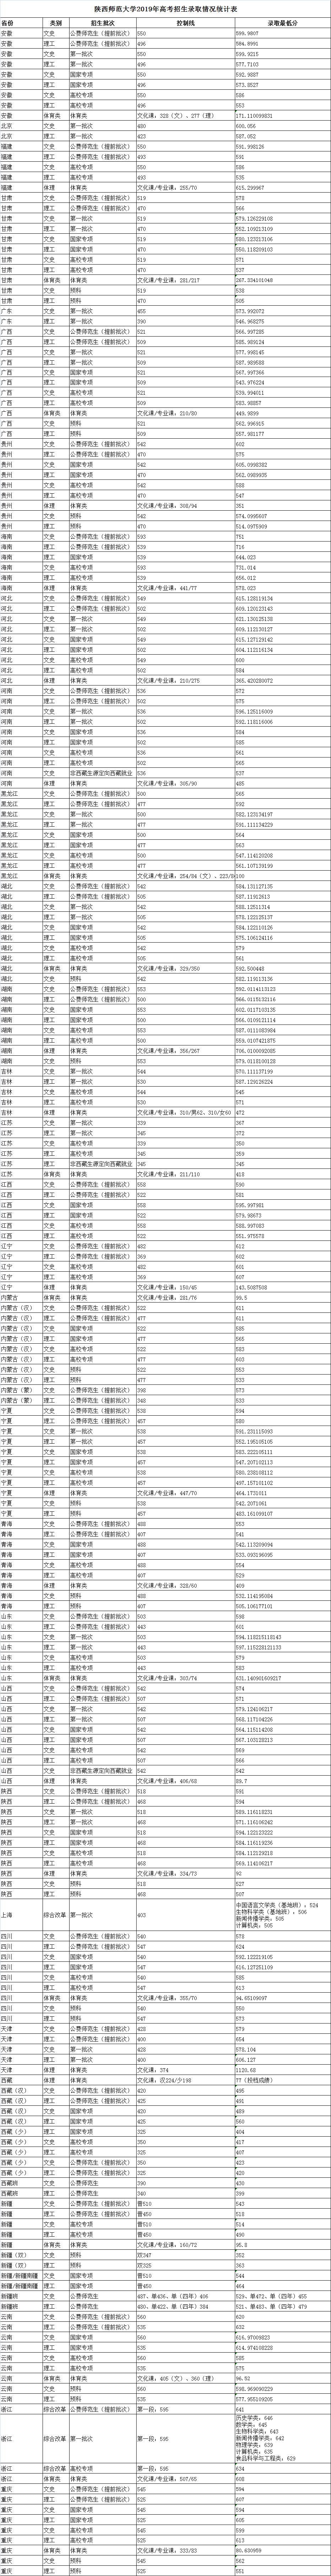 2019年陕西师范大学高考招生录取情况统计表（持续更新中）